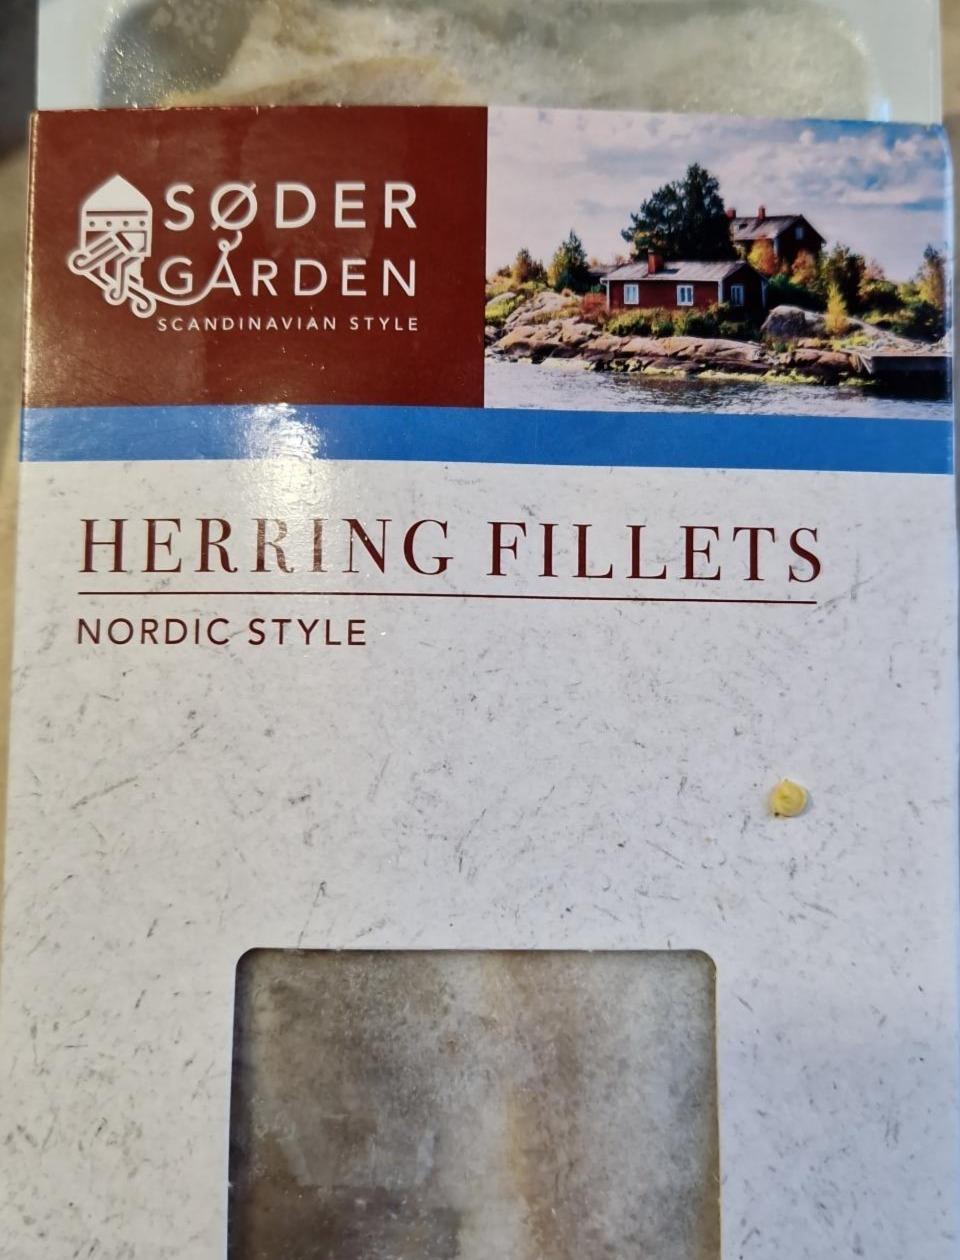 Fotografie - Harring fillets Nordic style Sødergården